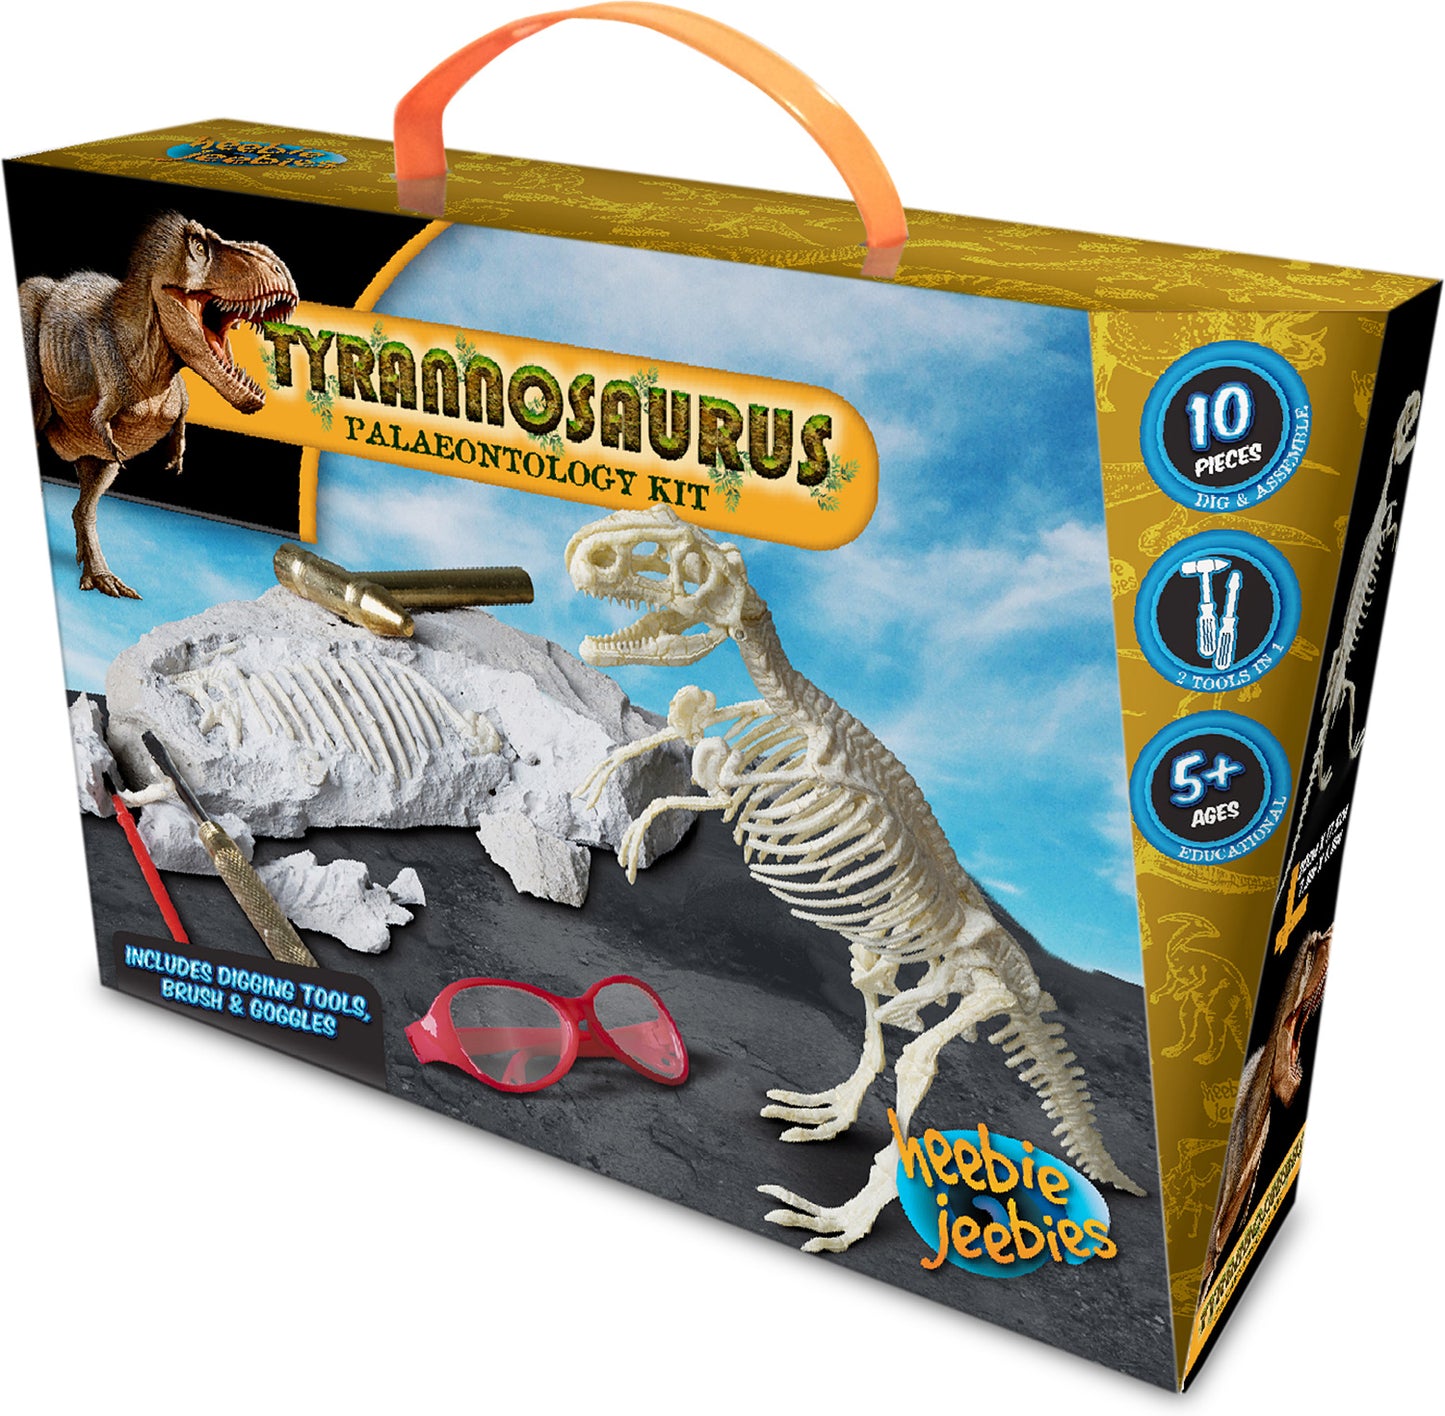 Tyrannosaurus Paleontology Kit